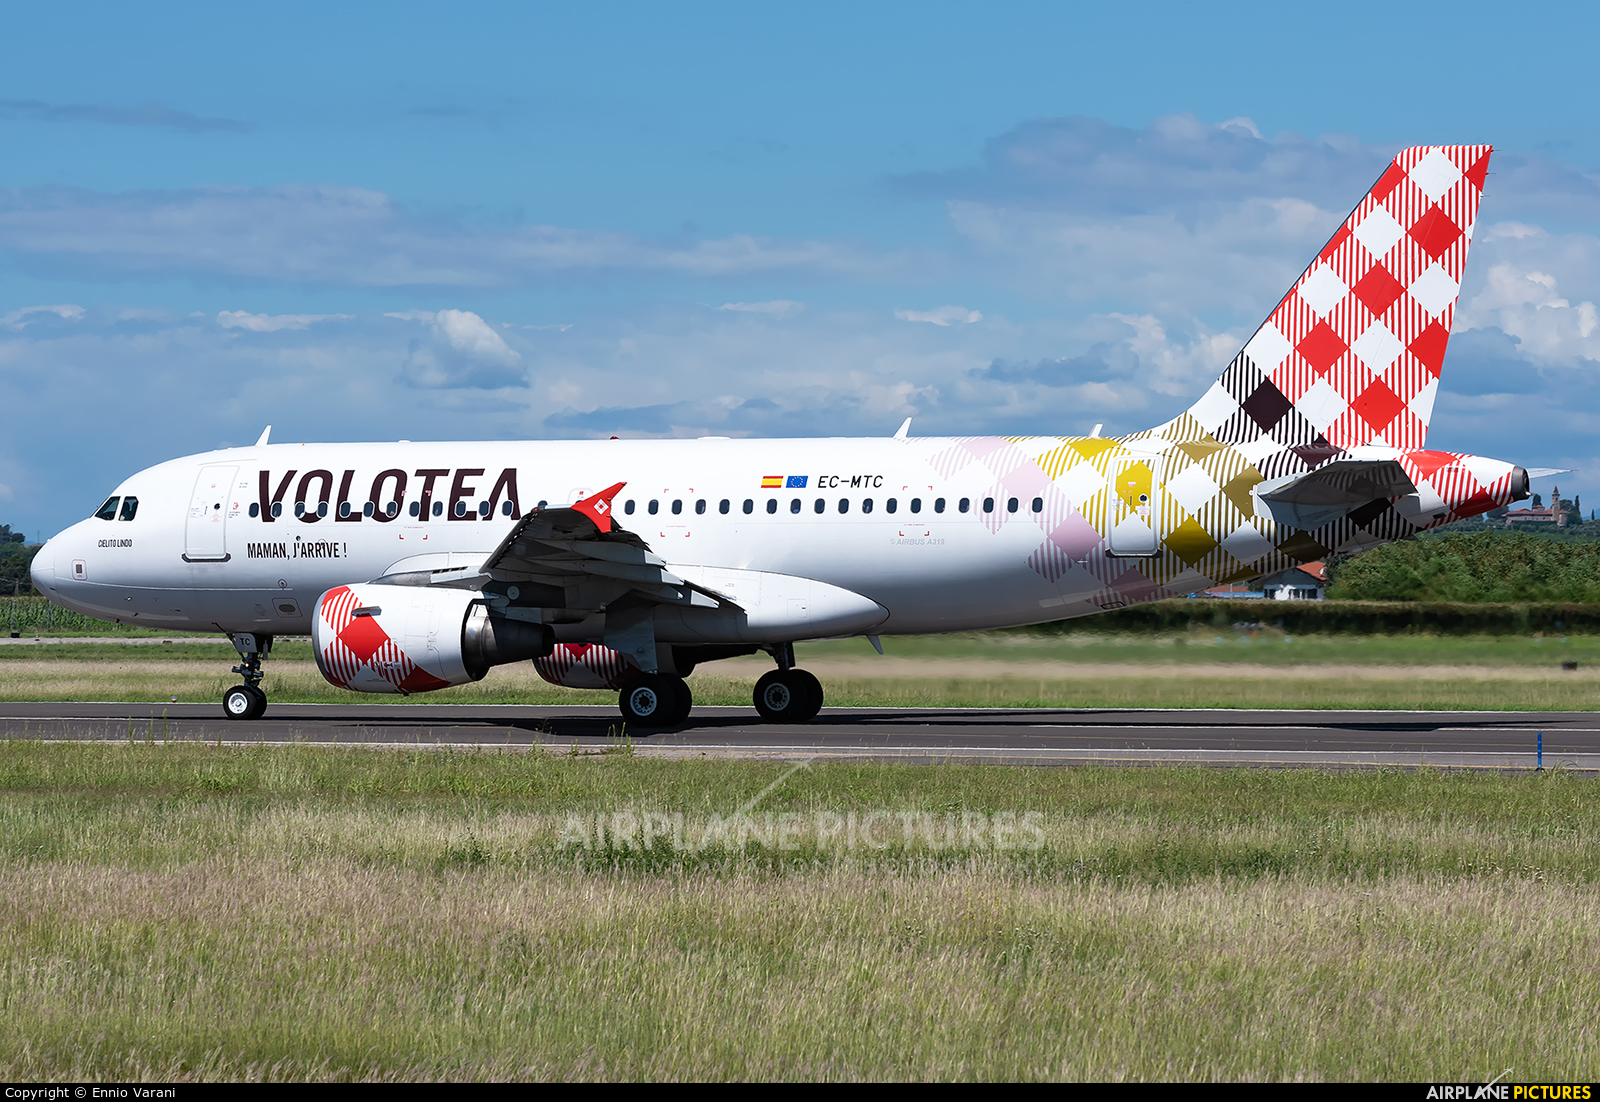 Volotea Airlines EC-MTC aircraft at Verona - Villafranca